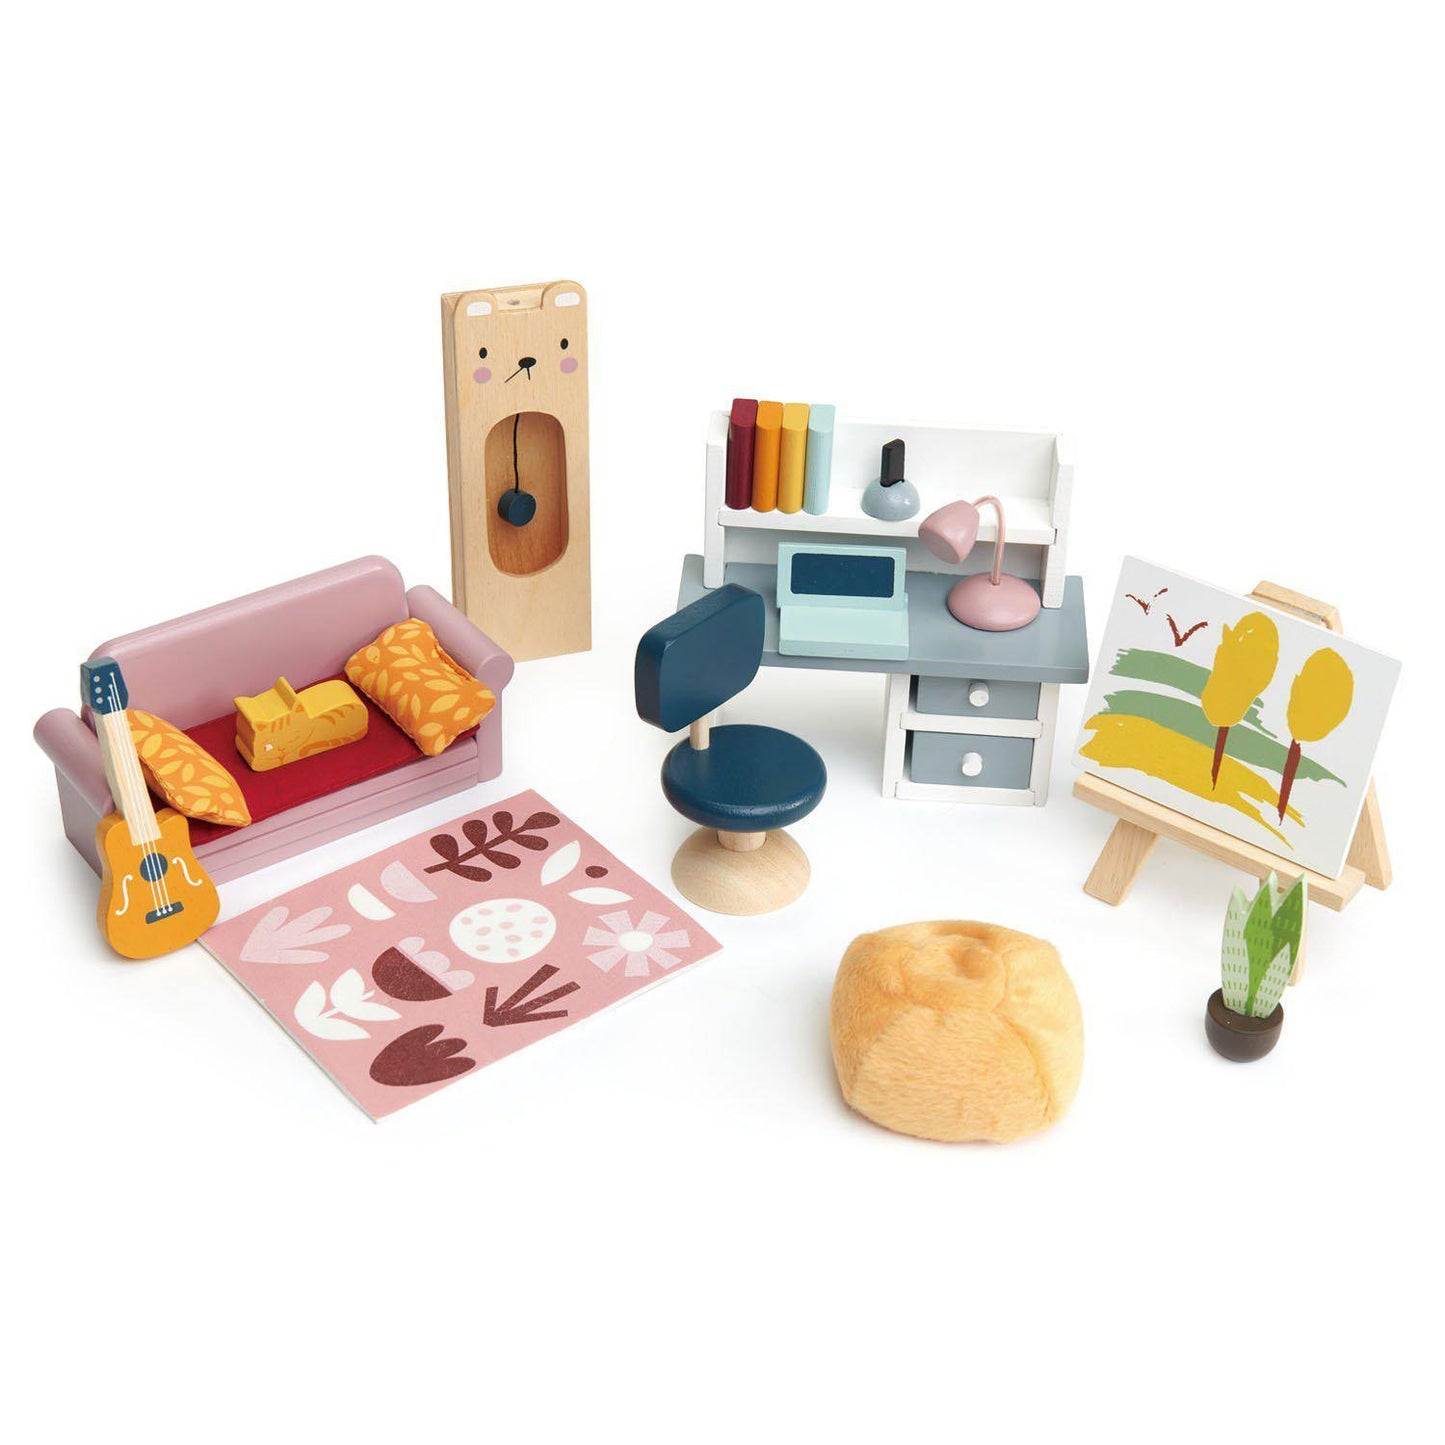 Babaház, prémium minőségű fából - 27 darab, baba nélkül - Tender Leaf Toys-Tender Leaf Toys-2-Játszma.ro - A maradandó élmények boltja